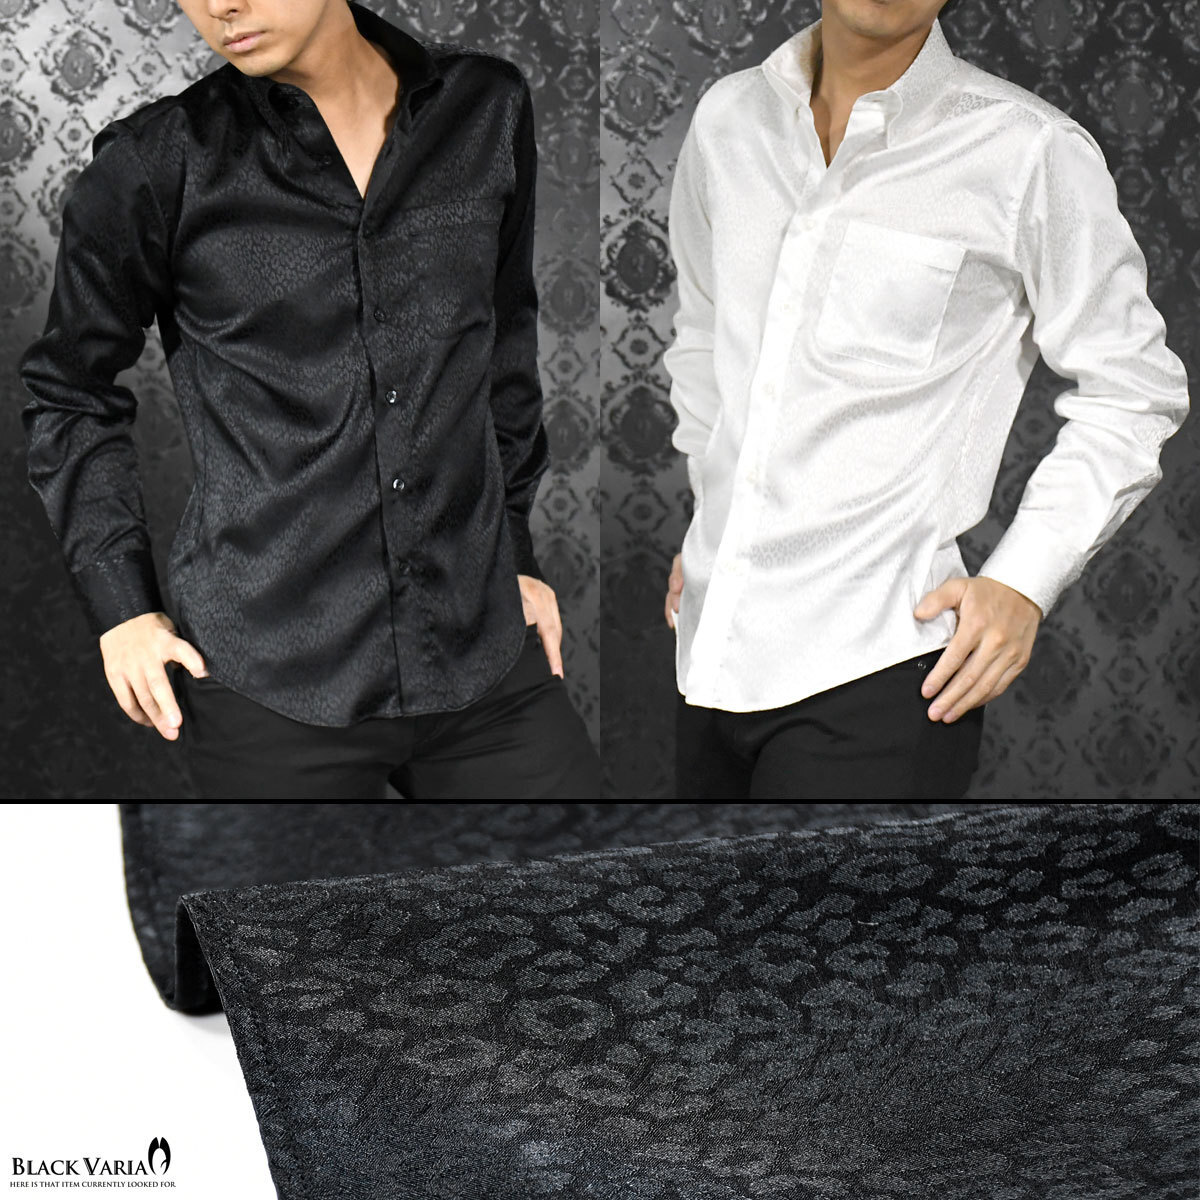 181710-bk BLACK VARIA ドゥエボットーニ ヒョウ柄 豹 ジャガード スナップダウン ドレスシャツ 日本製 メンズ(ブラック黒) M パーティー_画像4